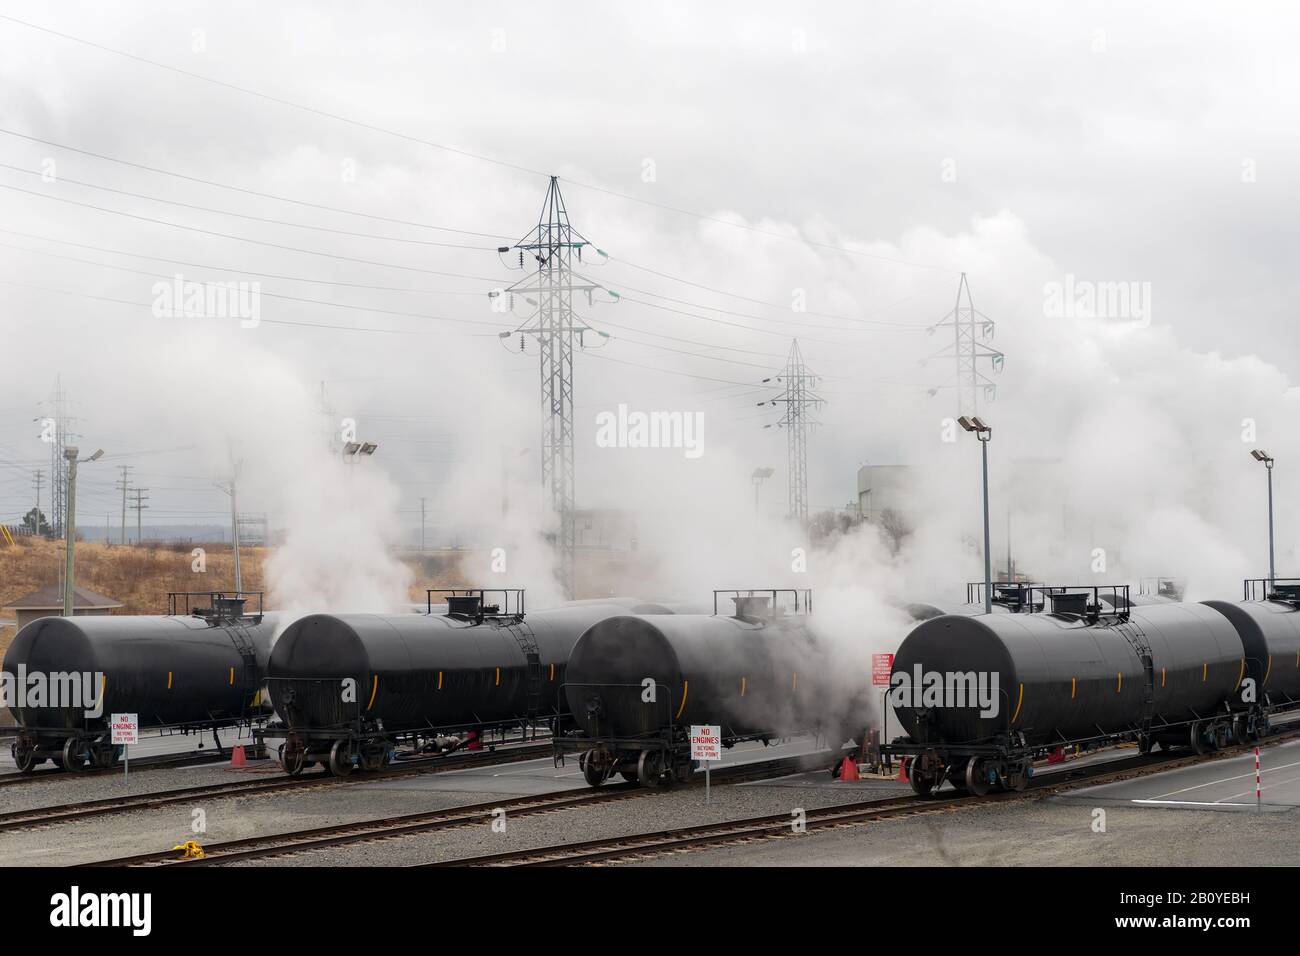 Wagons-citernes de chemin de fer utilisés pour le transport de produits pétroliers. Plusieurs cartes sont visibles. Le brouillard ou la fumée s'élève des voitures. Banque D'Images